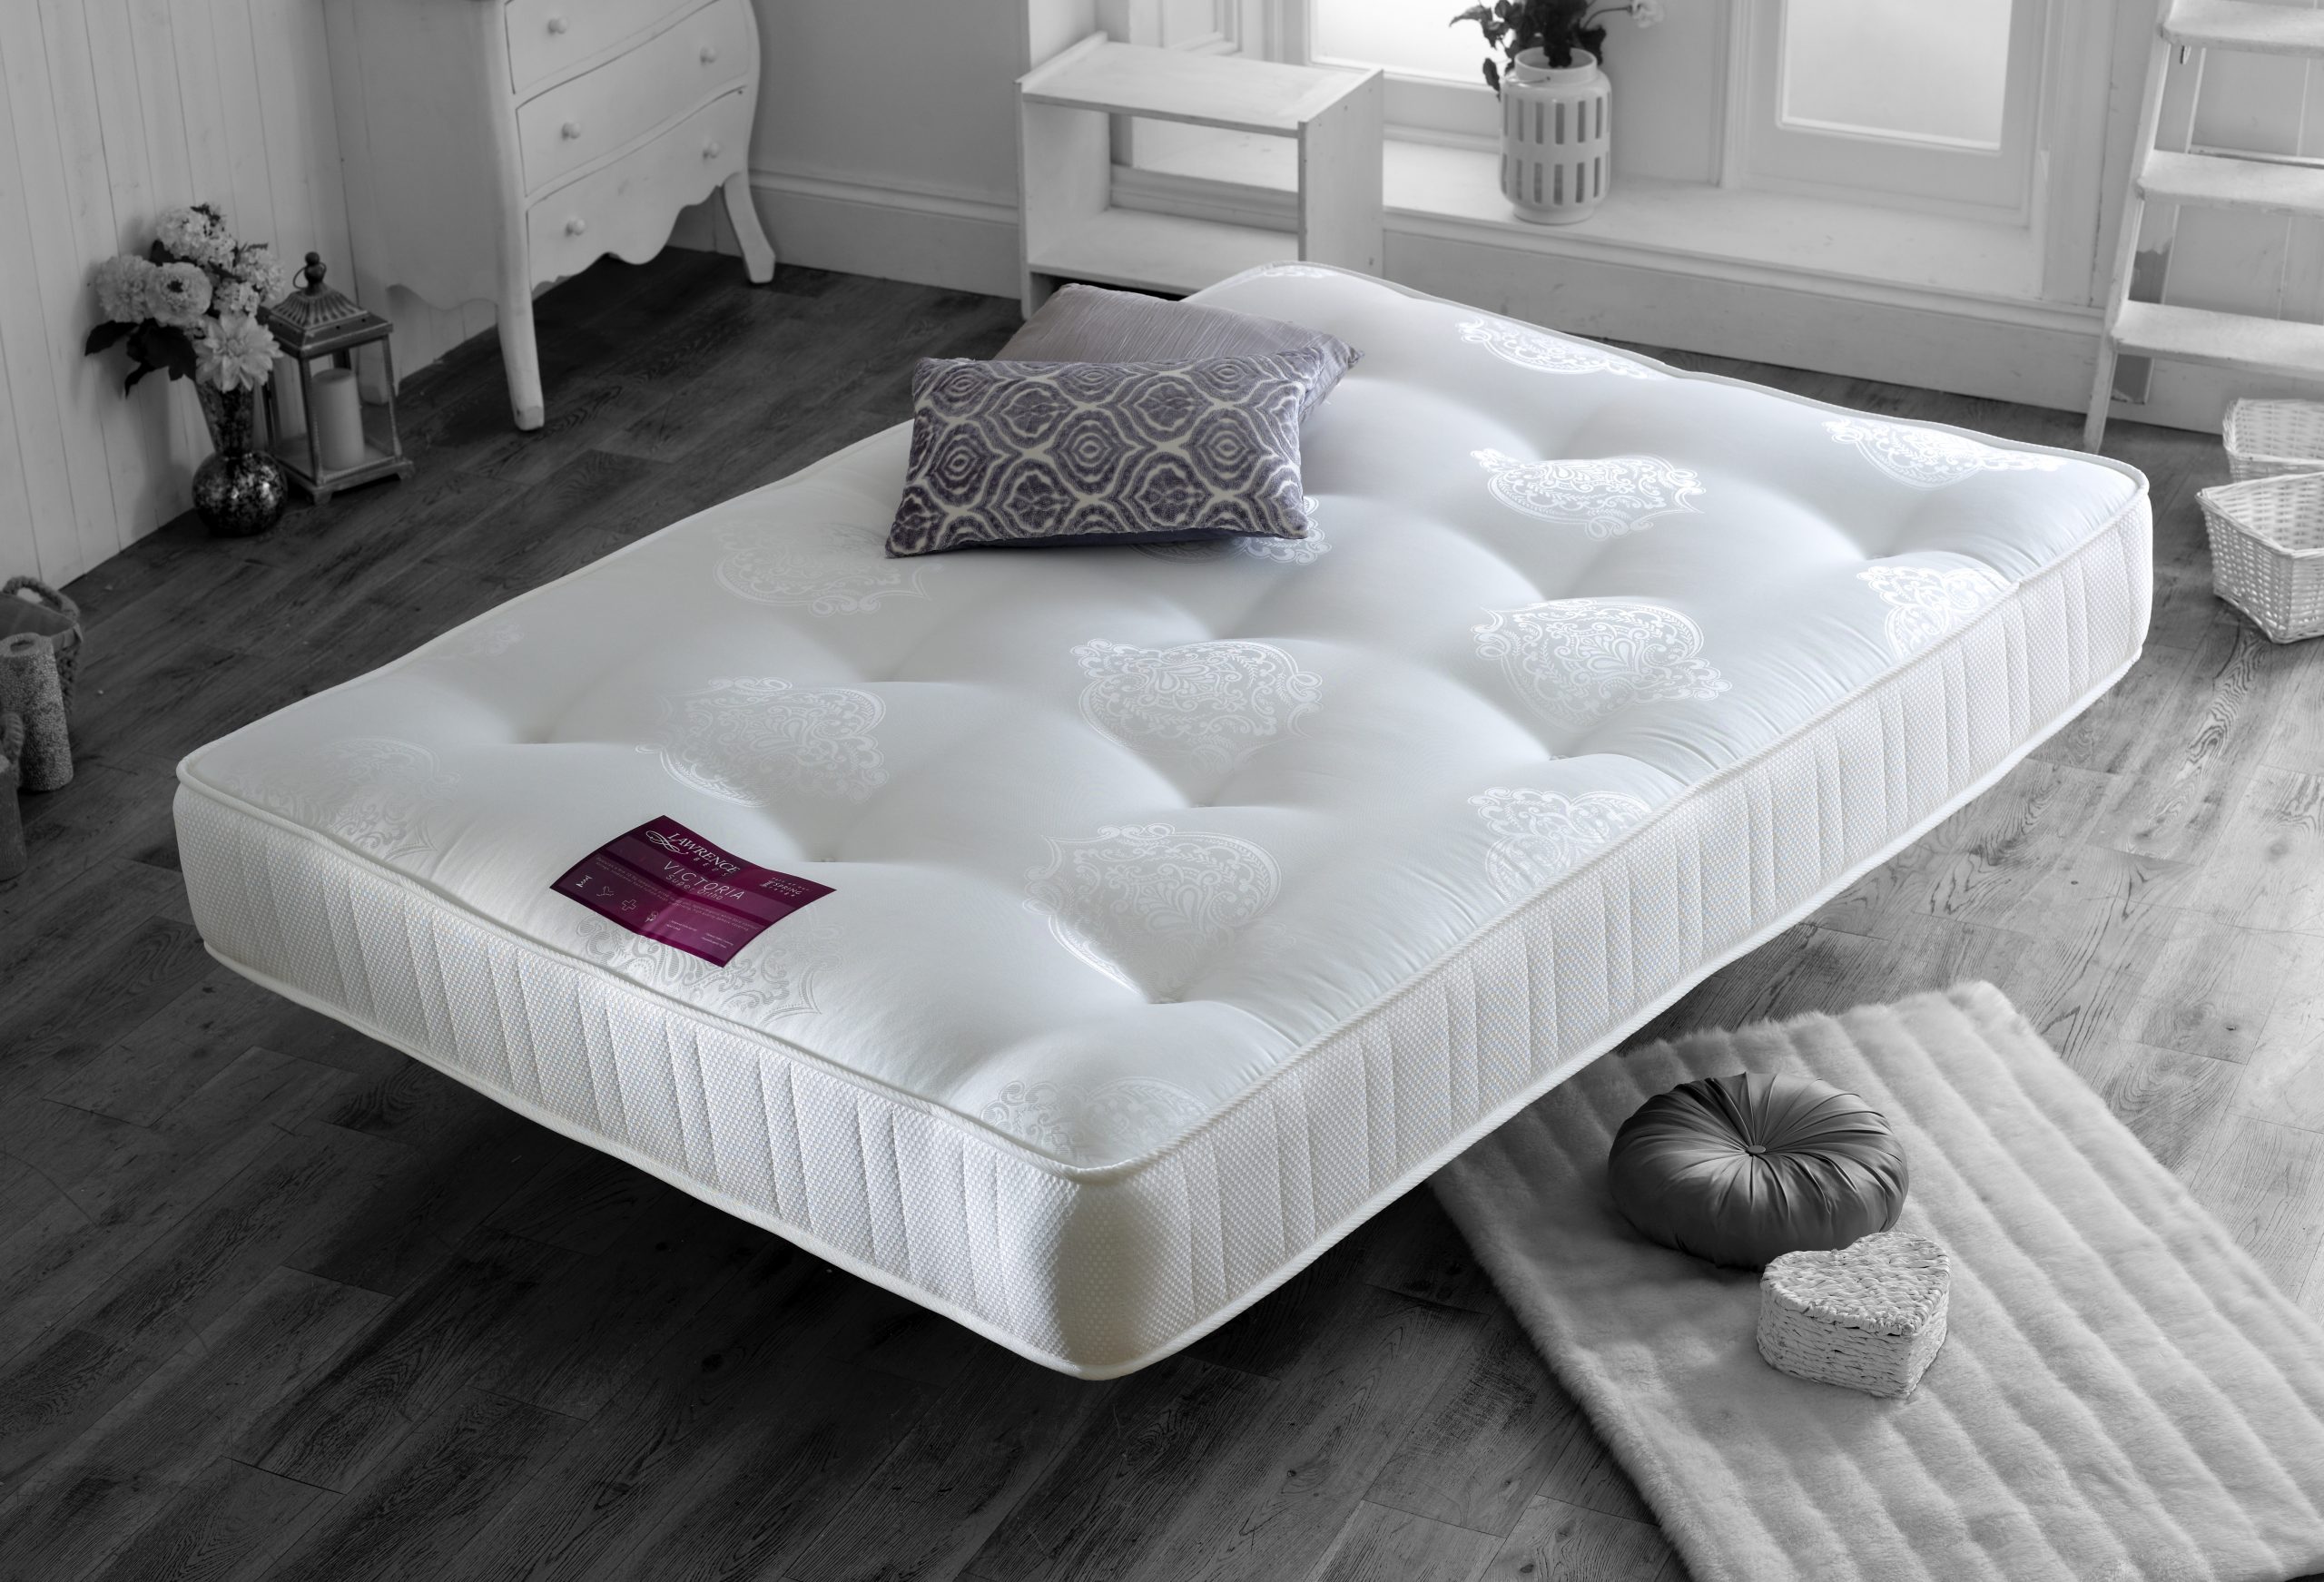 mattresses for sale victoria bc